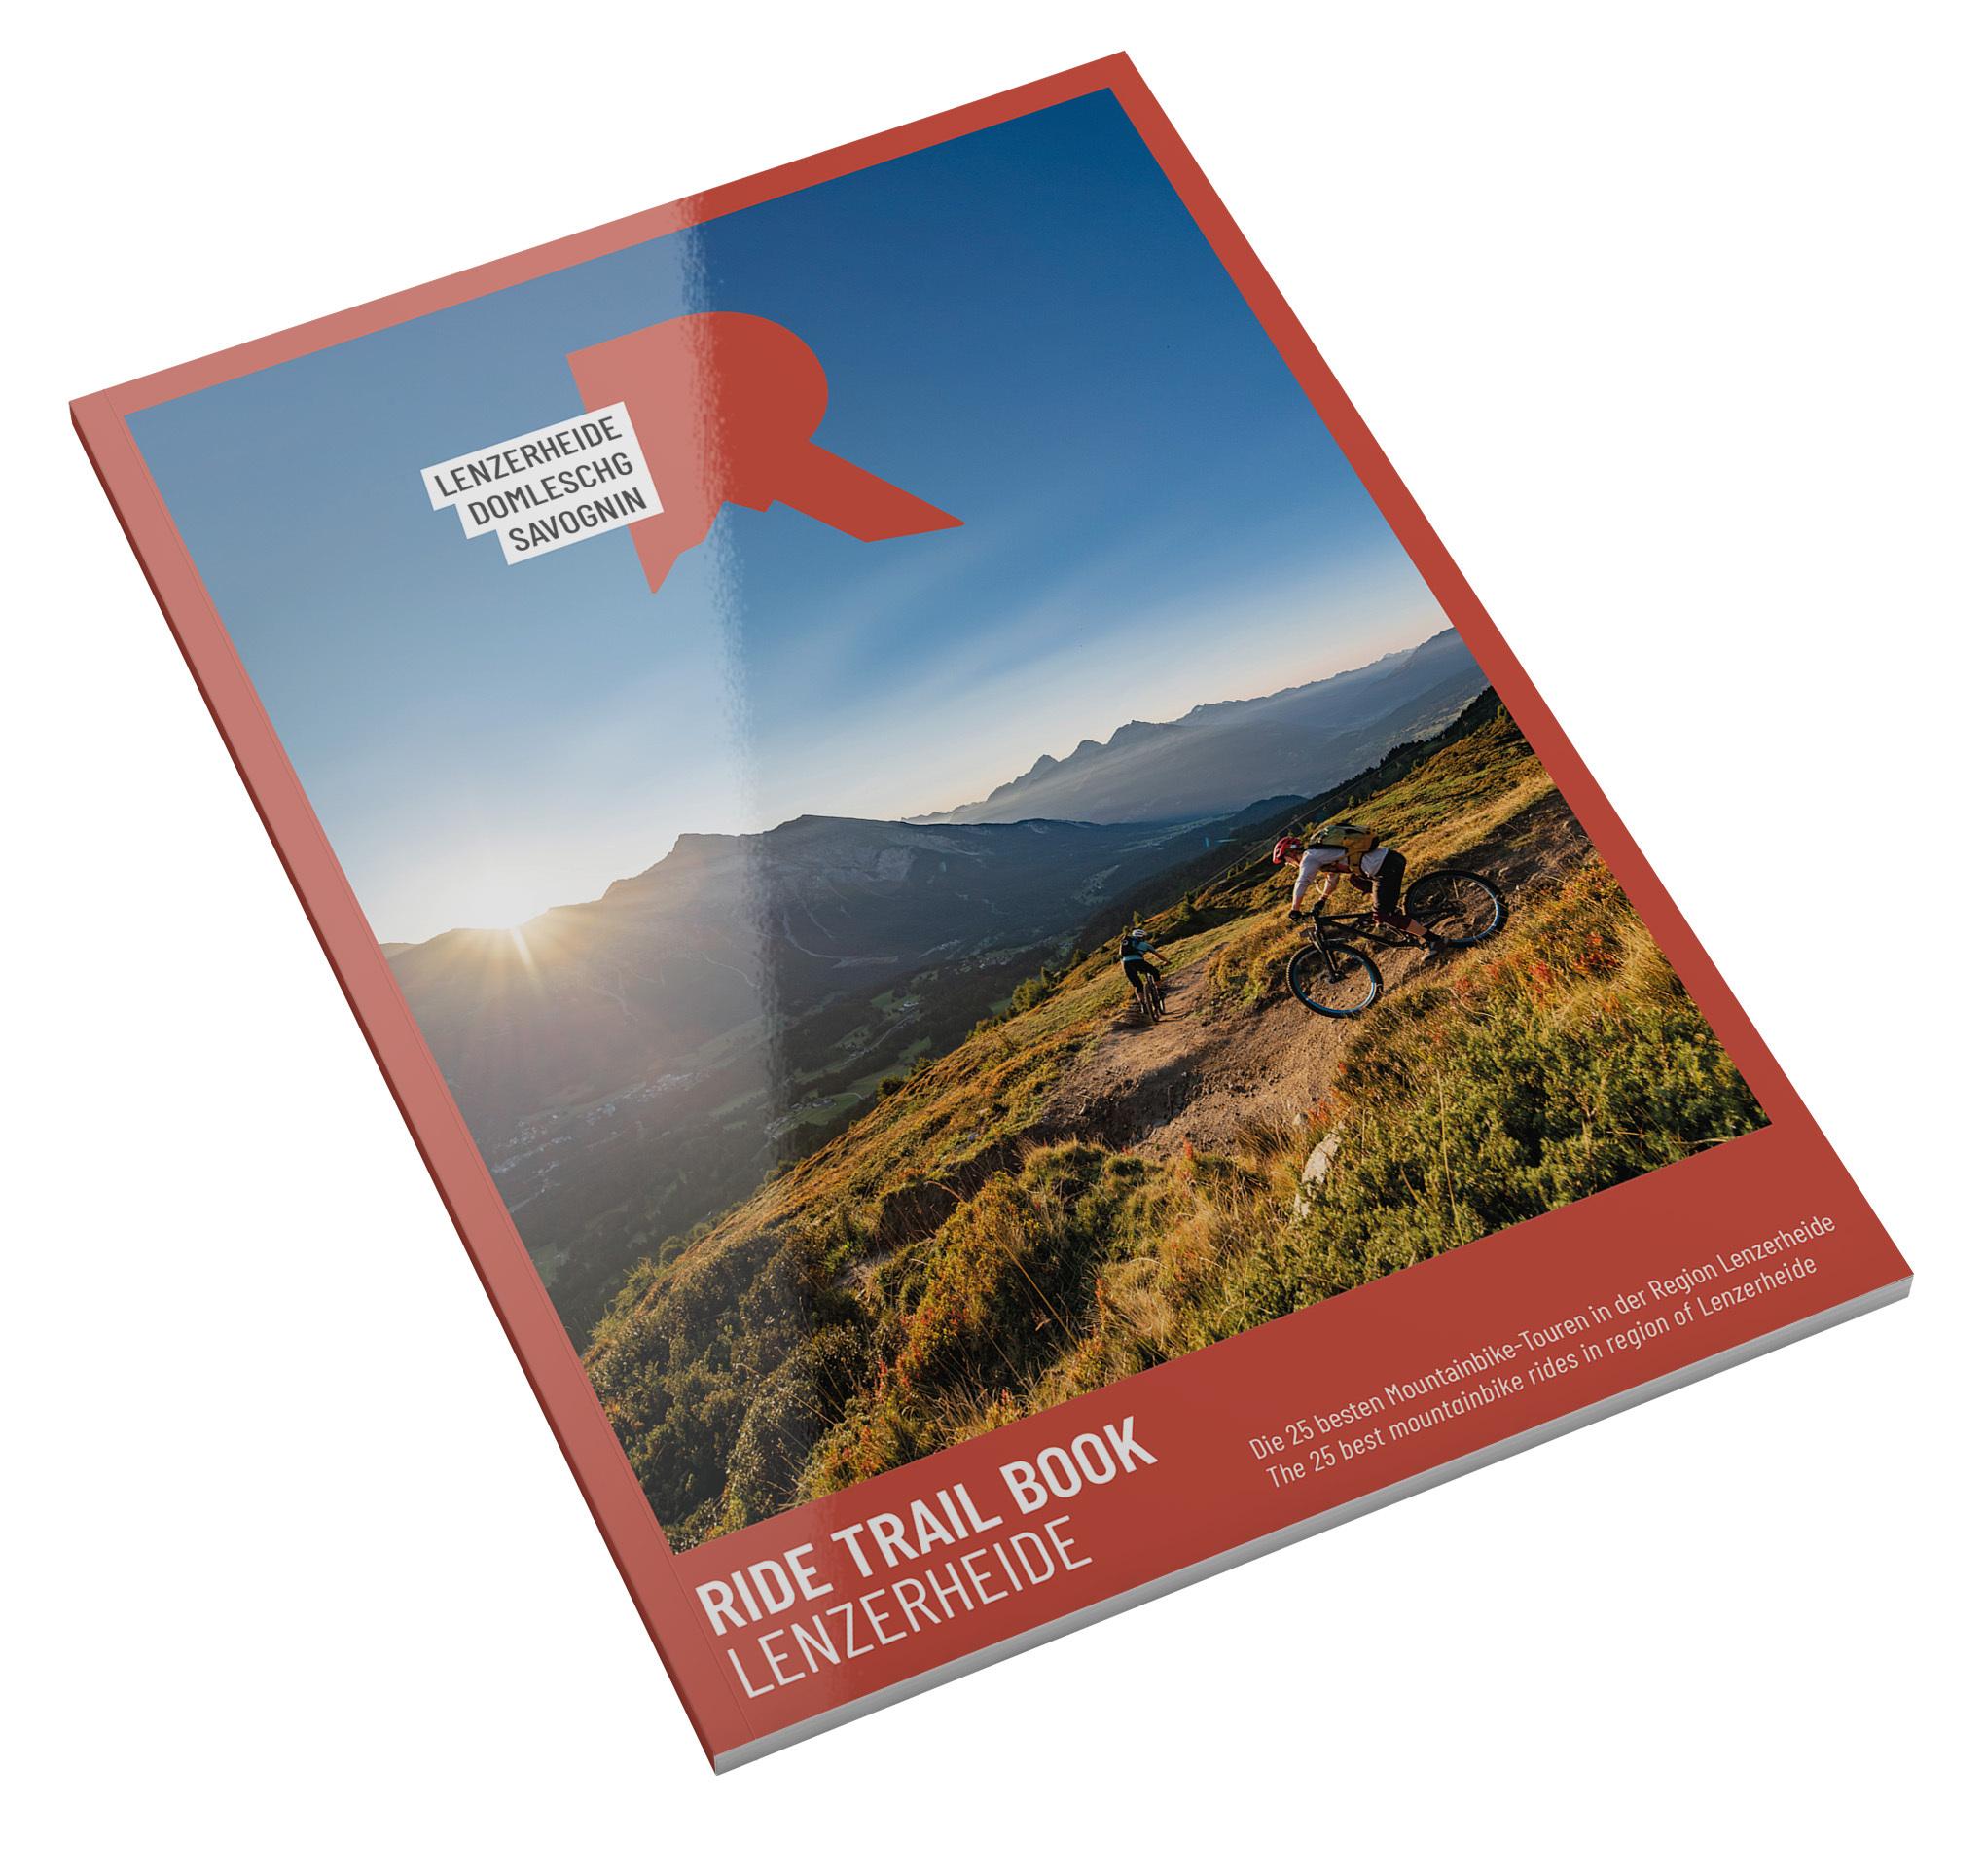 Ride Trail Book Lenzerheide_Cover